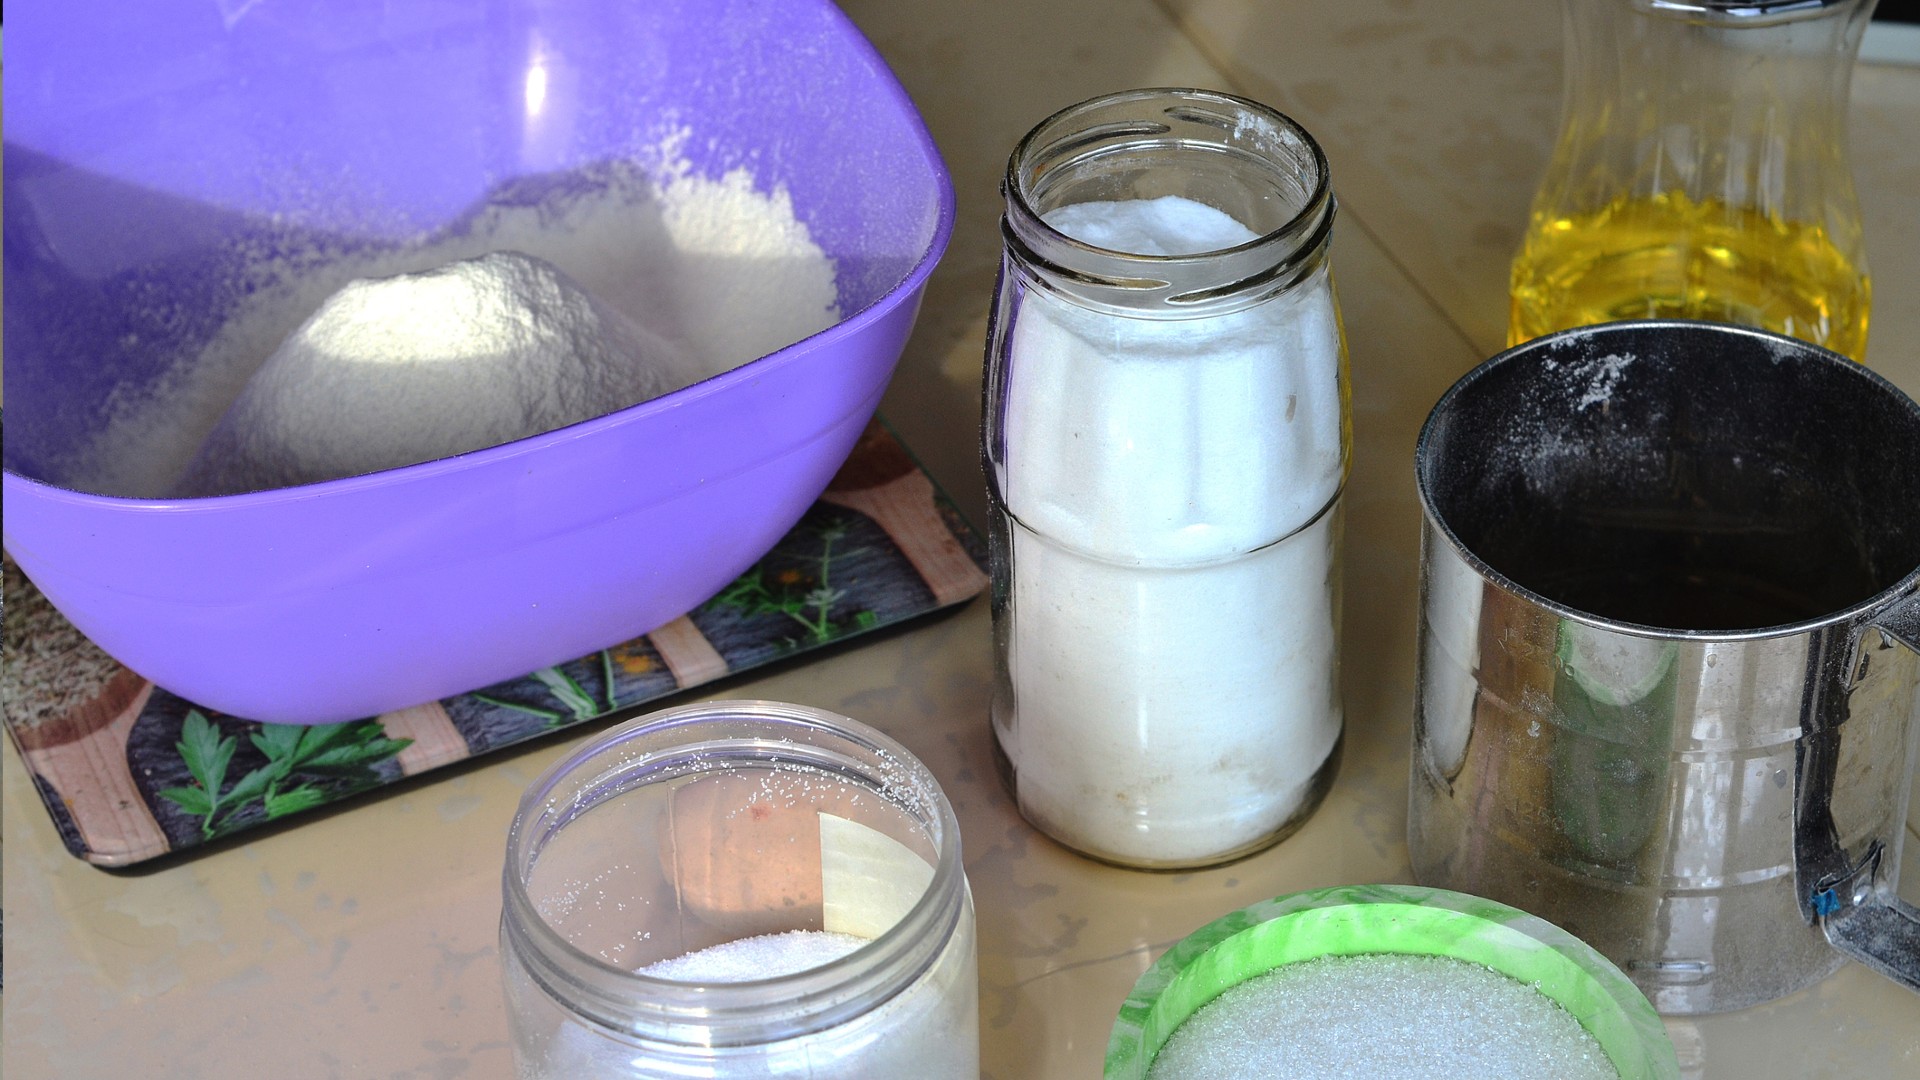 Limpieza. El bicarbonato de sodio y sus usos en la cocina - LA NACION